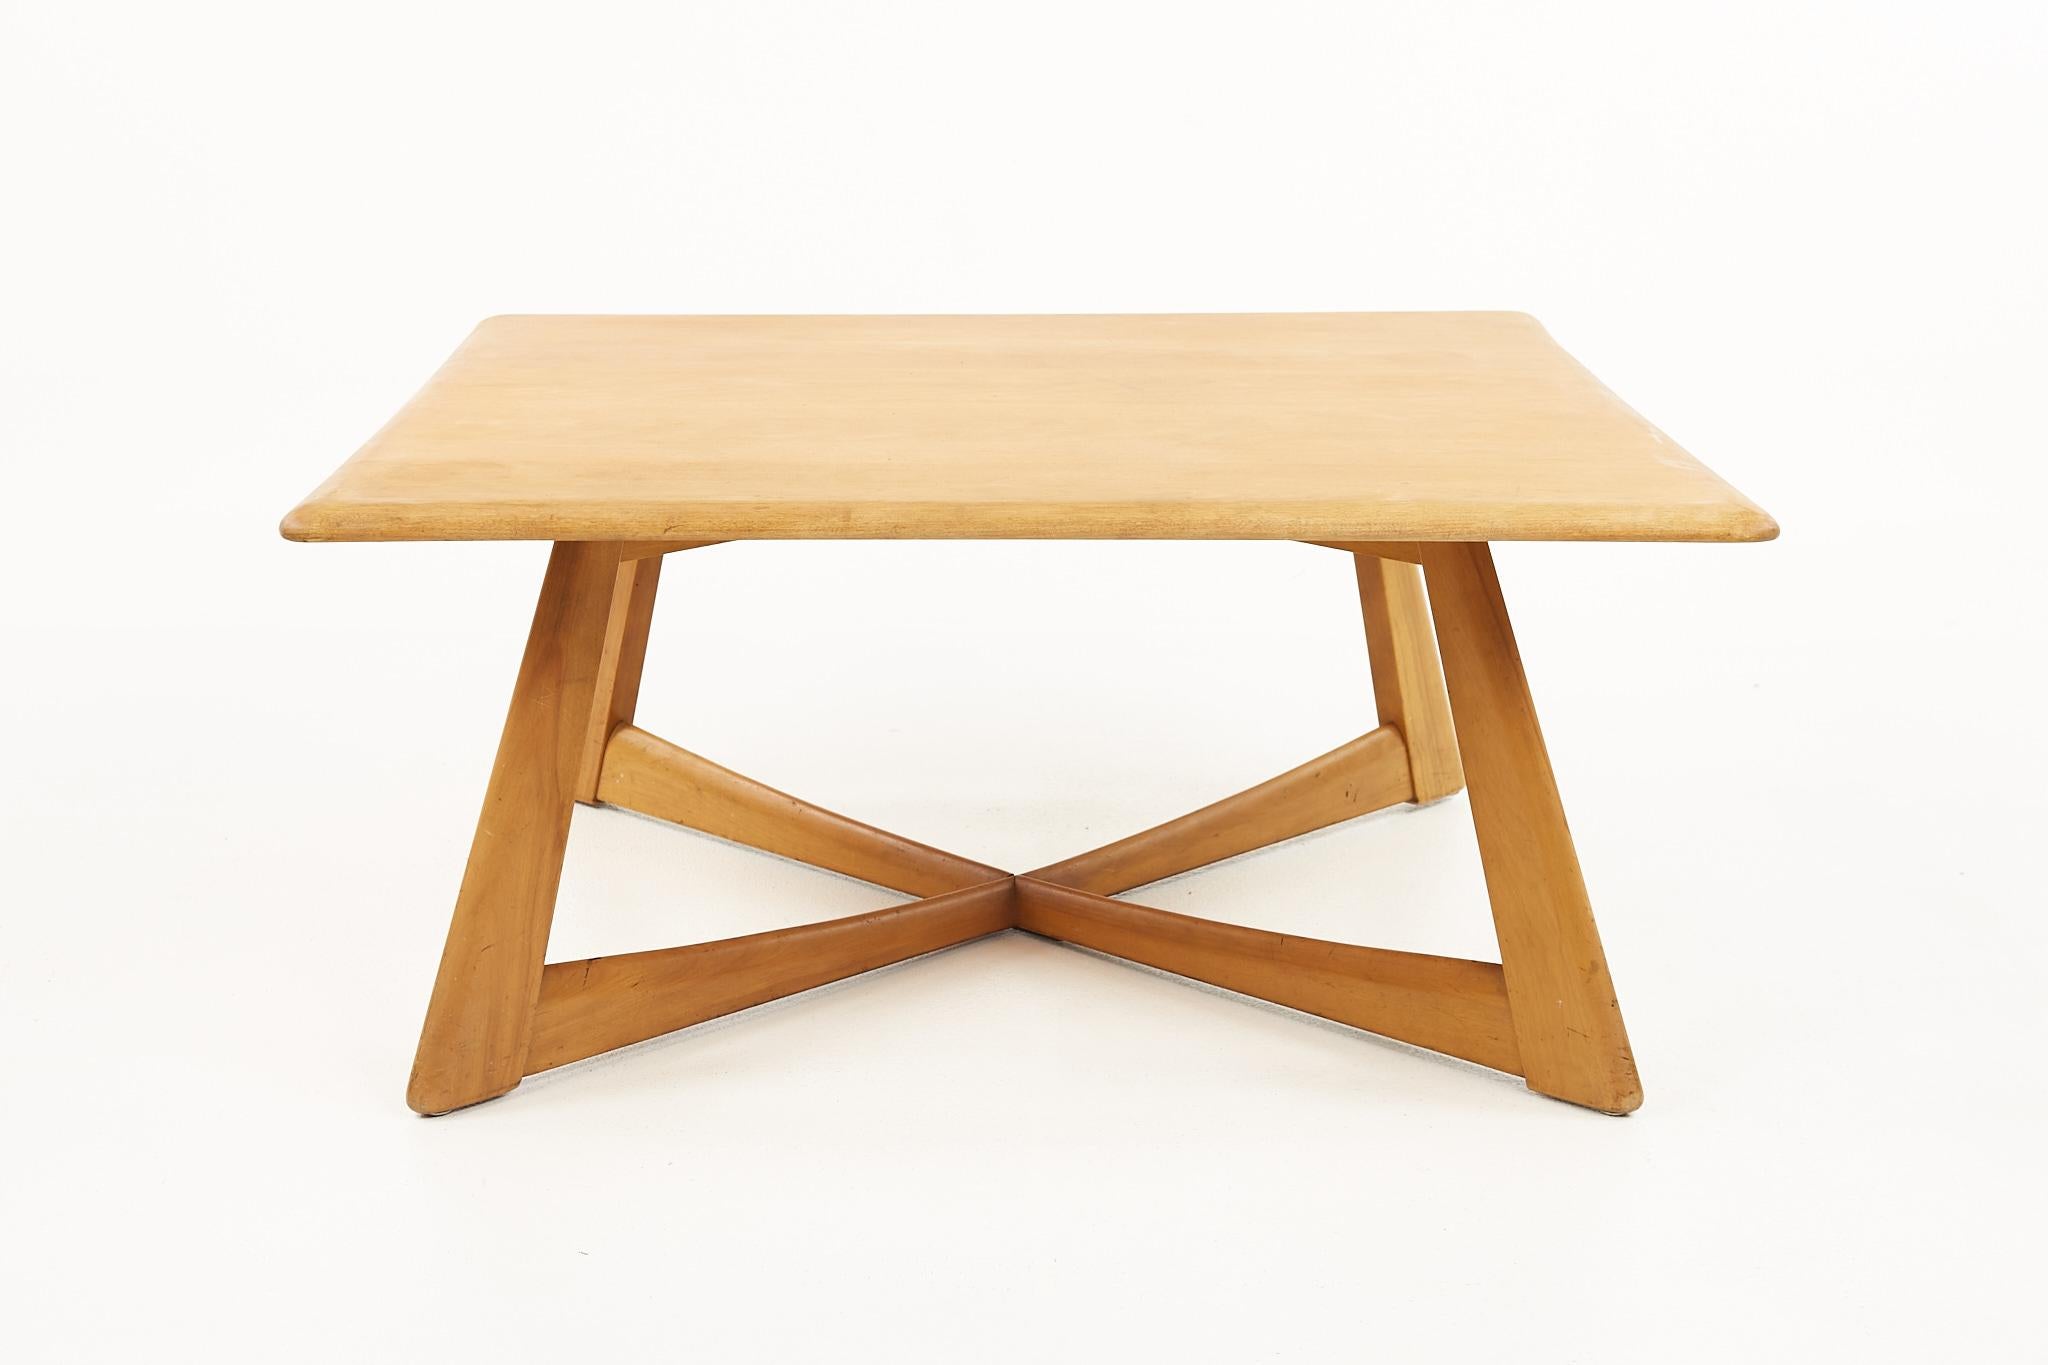 Heywood Wakefield mid-century blonde x base square coffee table.

La table basse mesure : largeur 36 x profondeur 36 x hauteur 16.5 pouces.

Tous les meubles peuvent être obtenus dans ce que nous appelons un état vintage restauré. Cela signifie